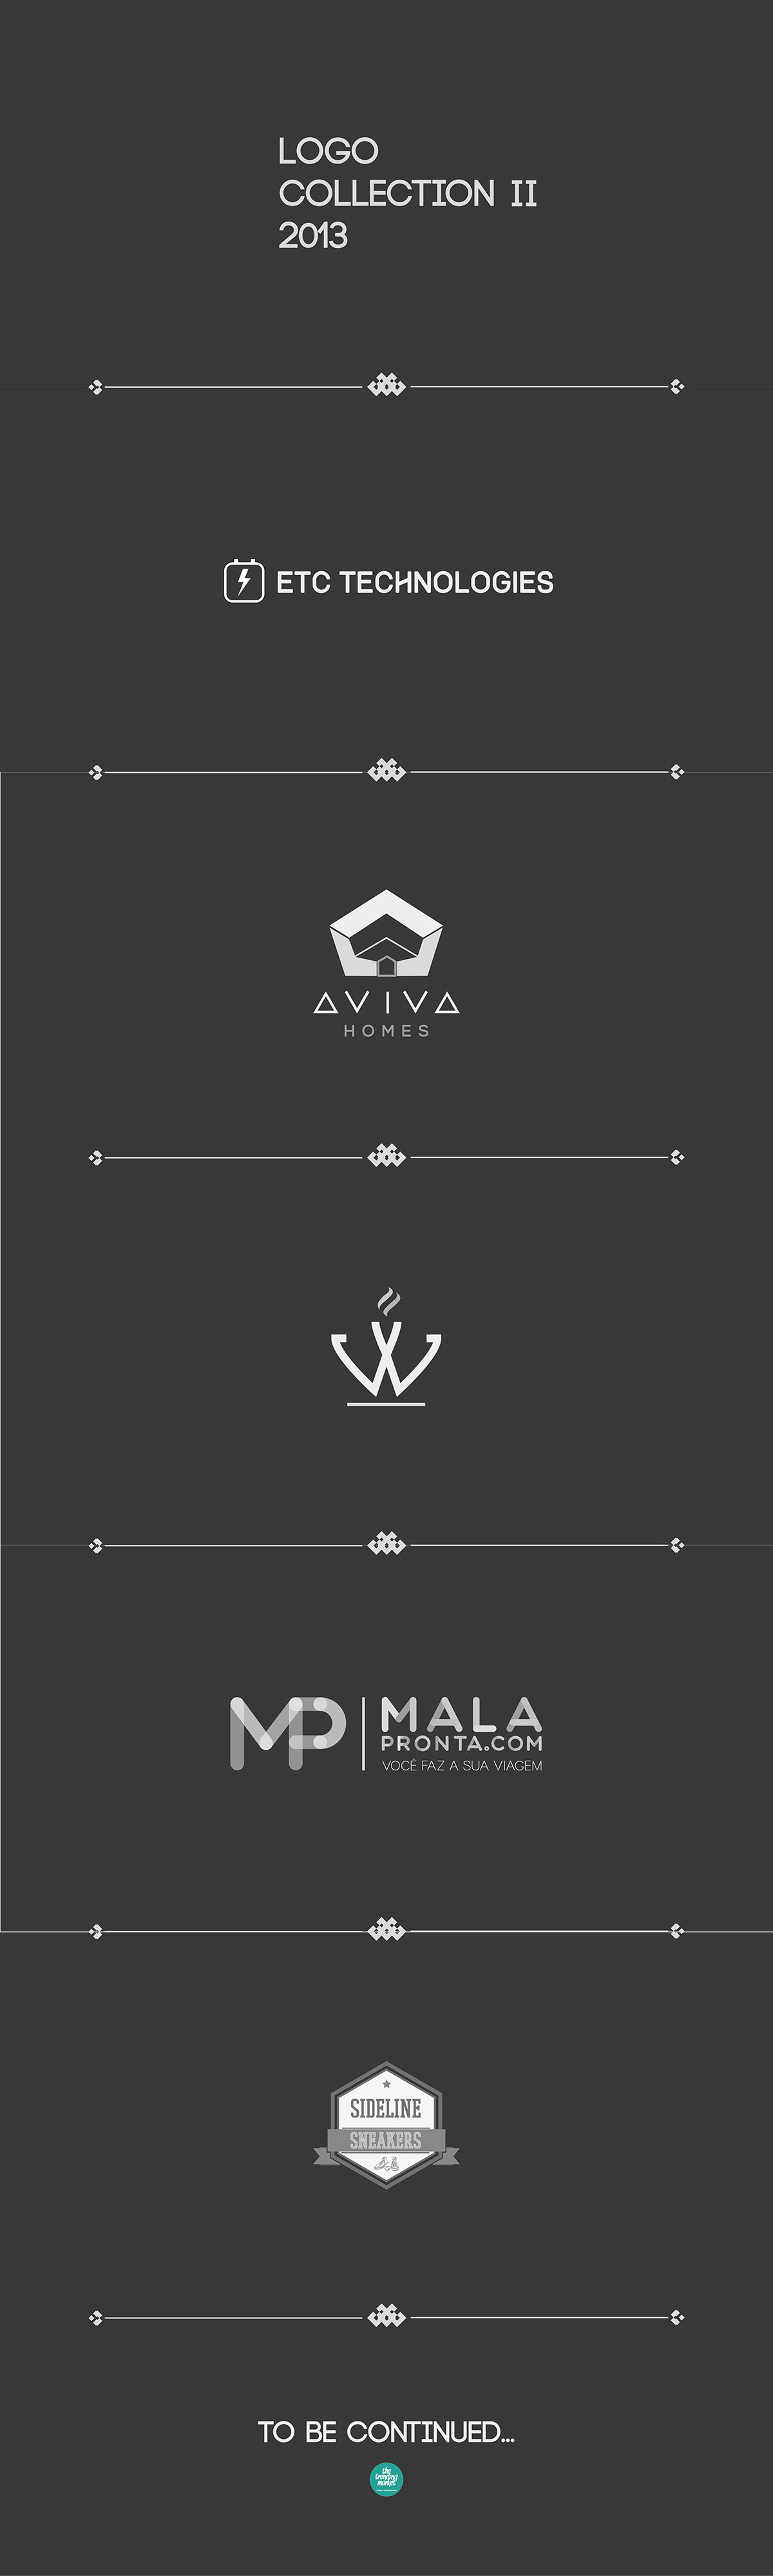 logo logos logo collection